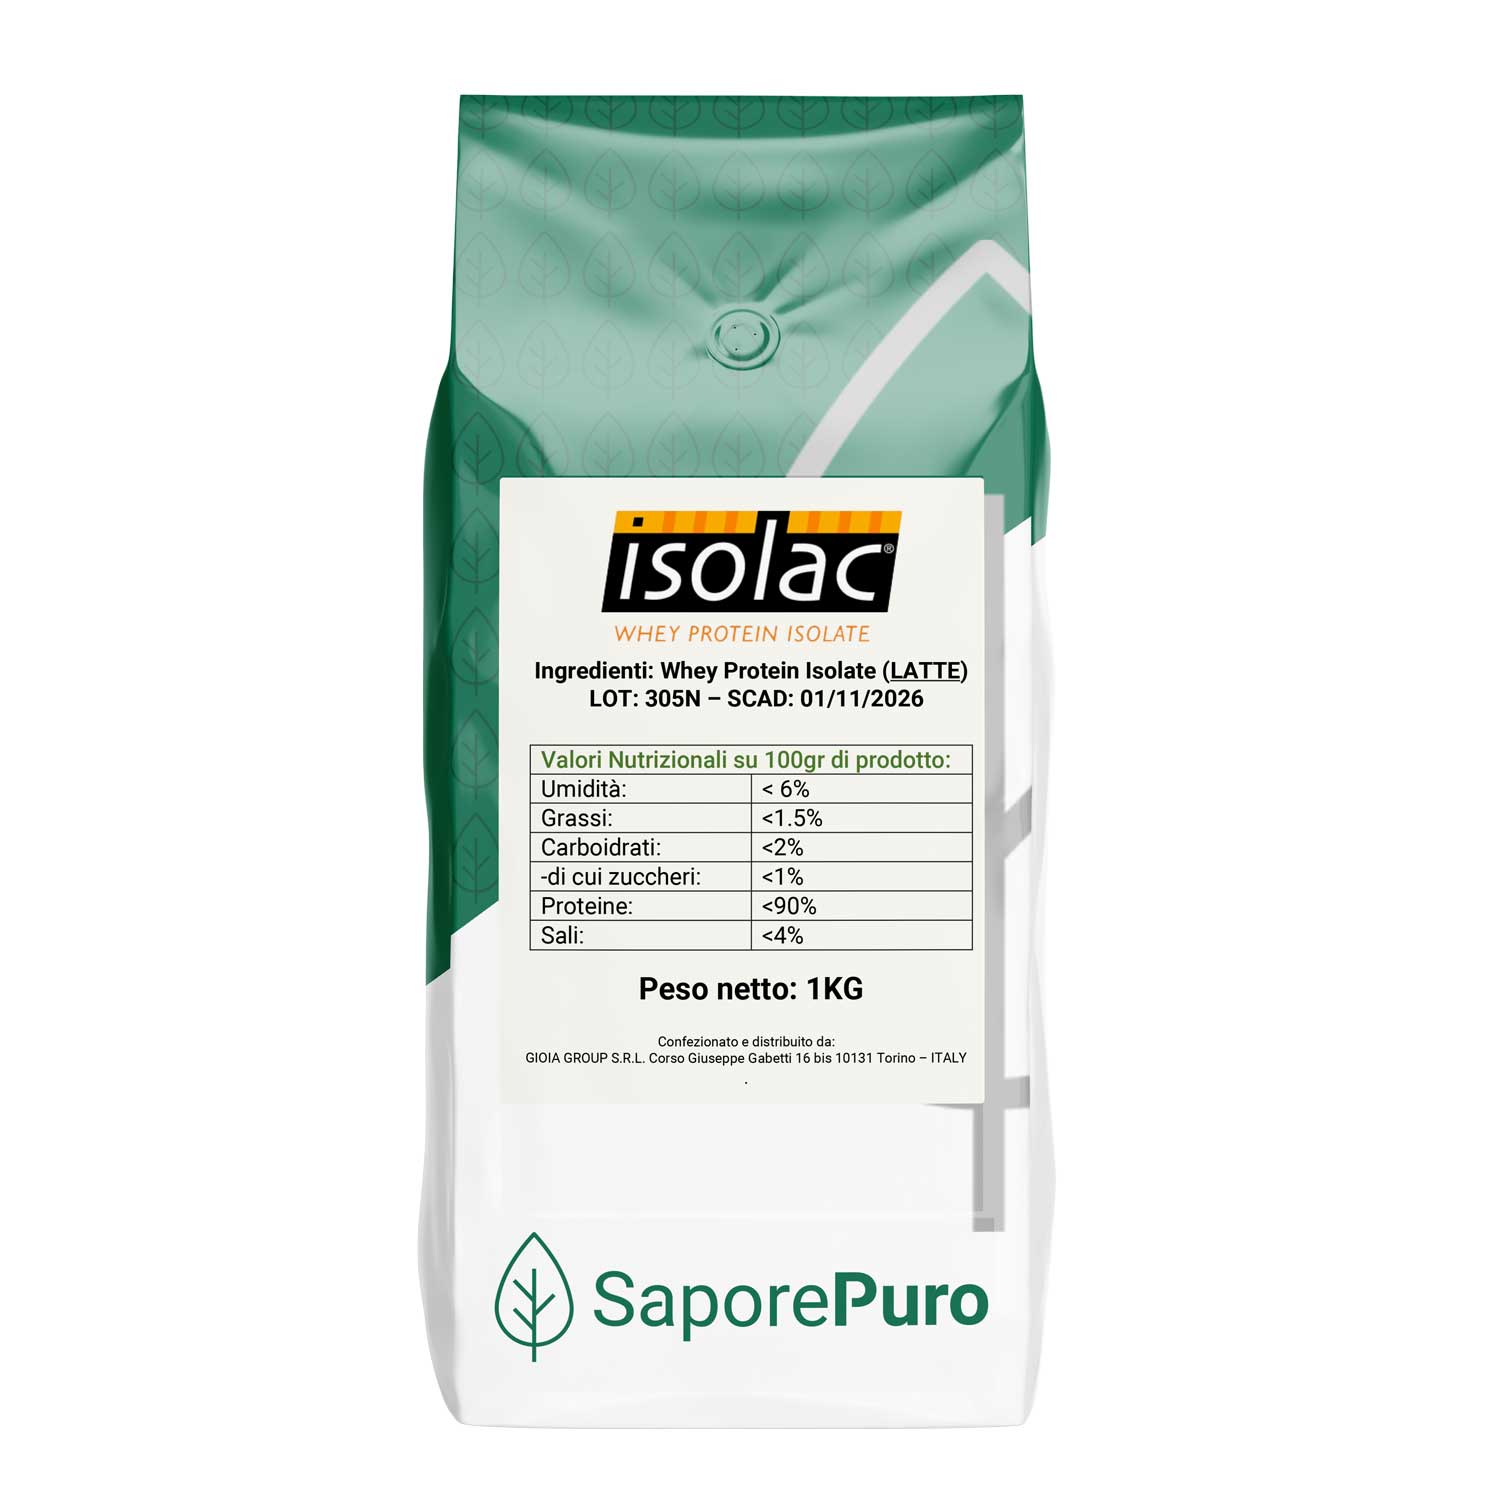 ISOLAC -  Proteine Isolate del Latte Performanti -  90% di parte proteica - 1kg - SaporePuro